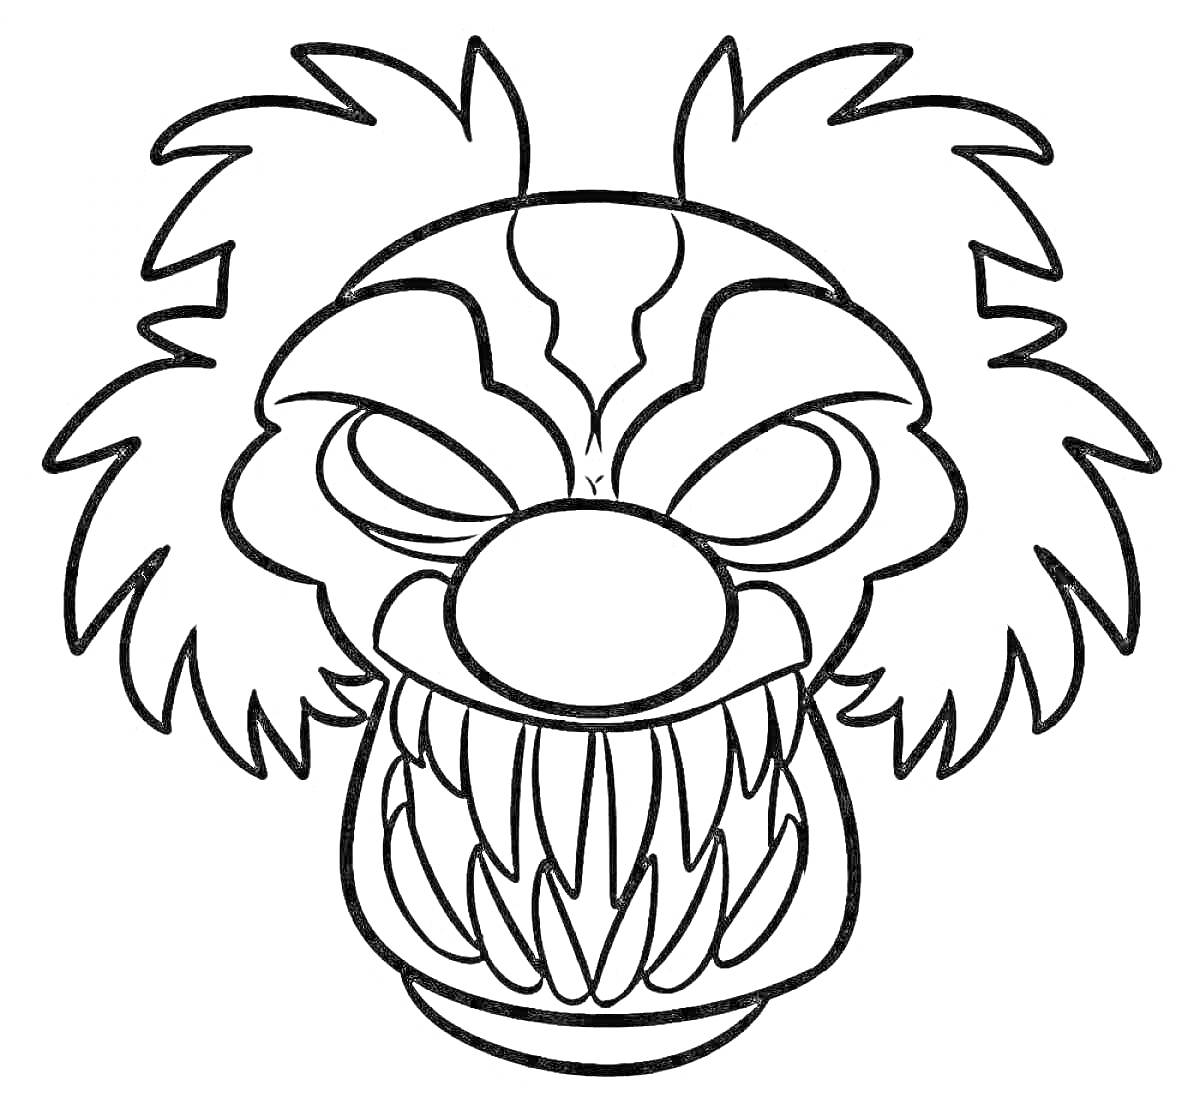 Раскраска Лицо клоуна Пеннивайза с большими зубами